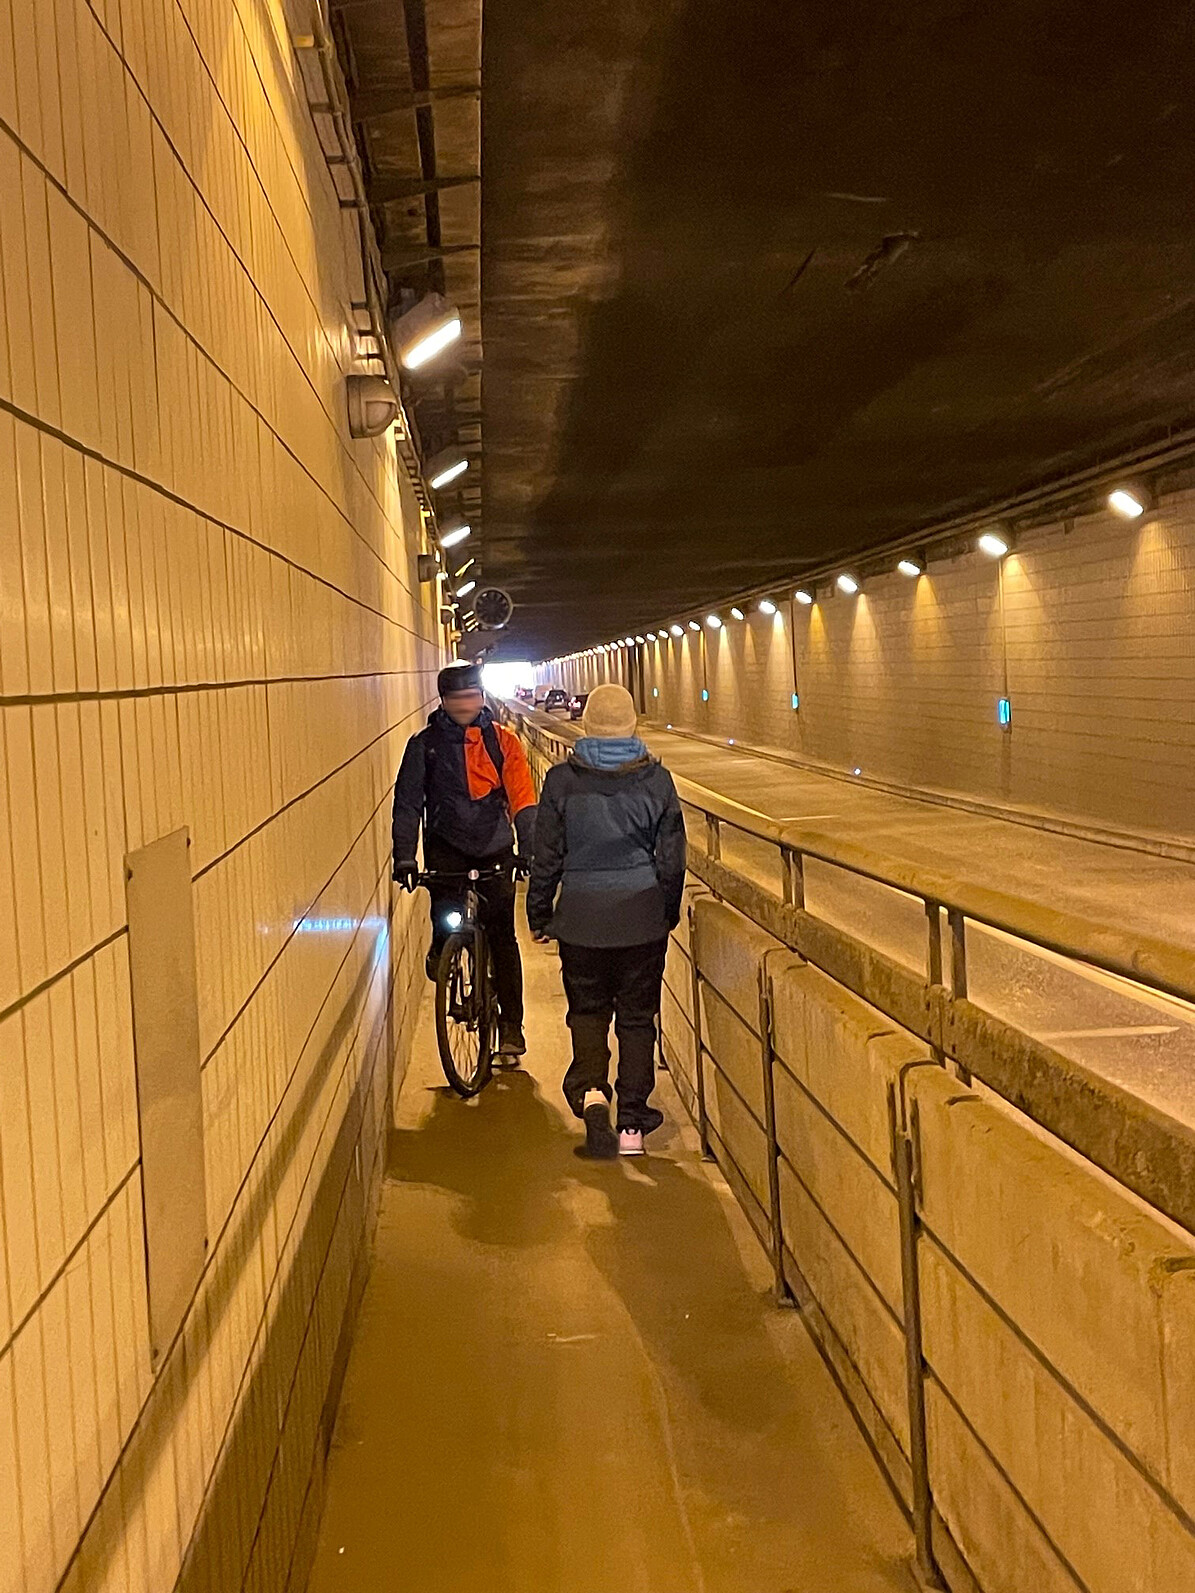 Bild zeigt den Flughafentunnel mit einem Fahrradfahrer und einer entgegen kommenden Fußgängerin